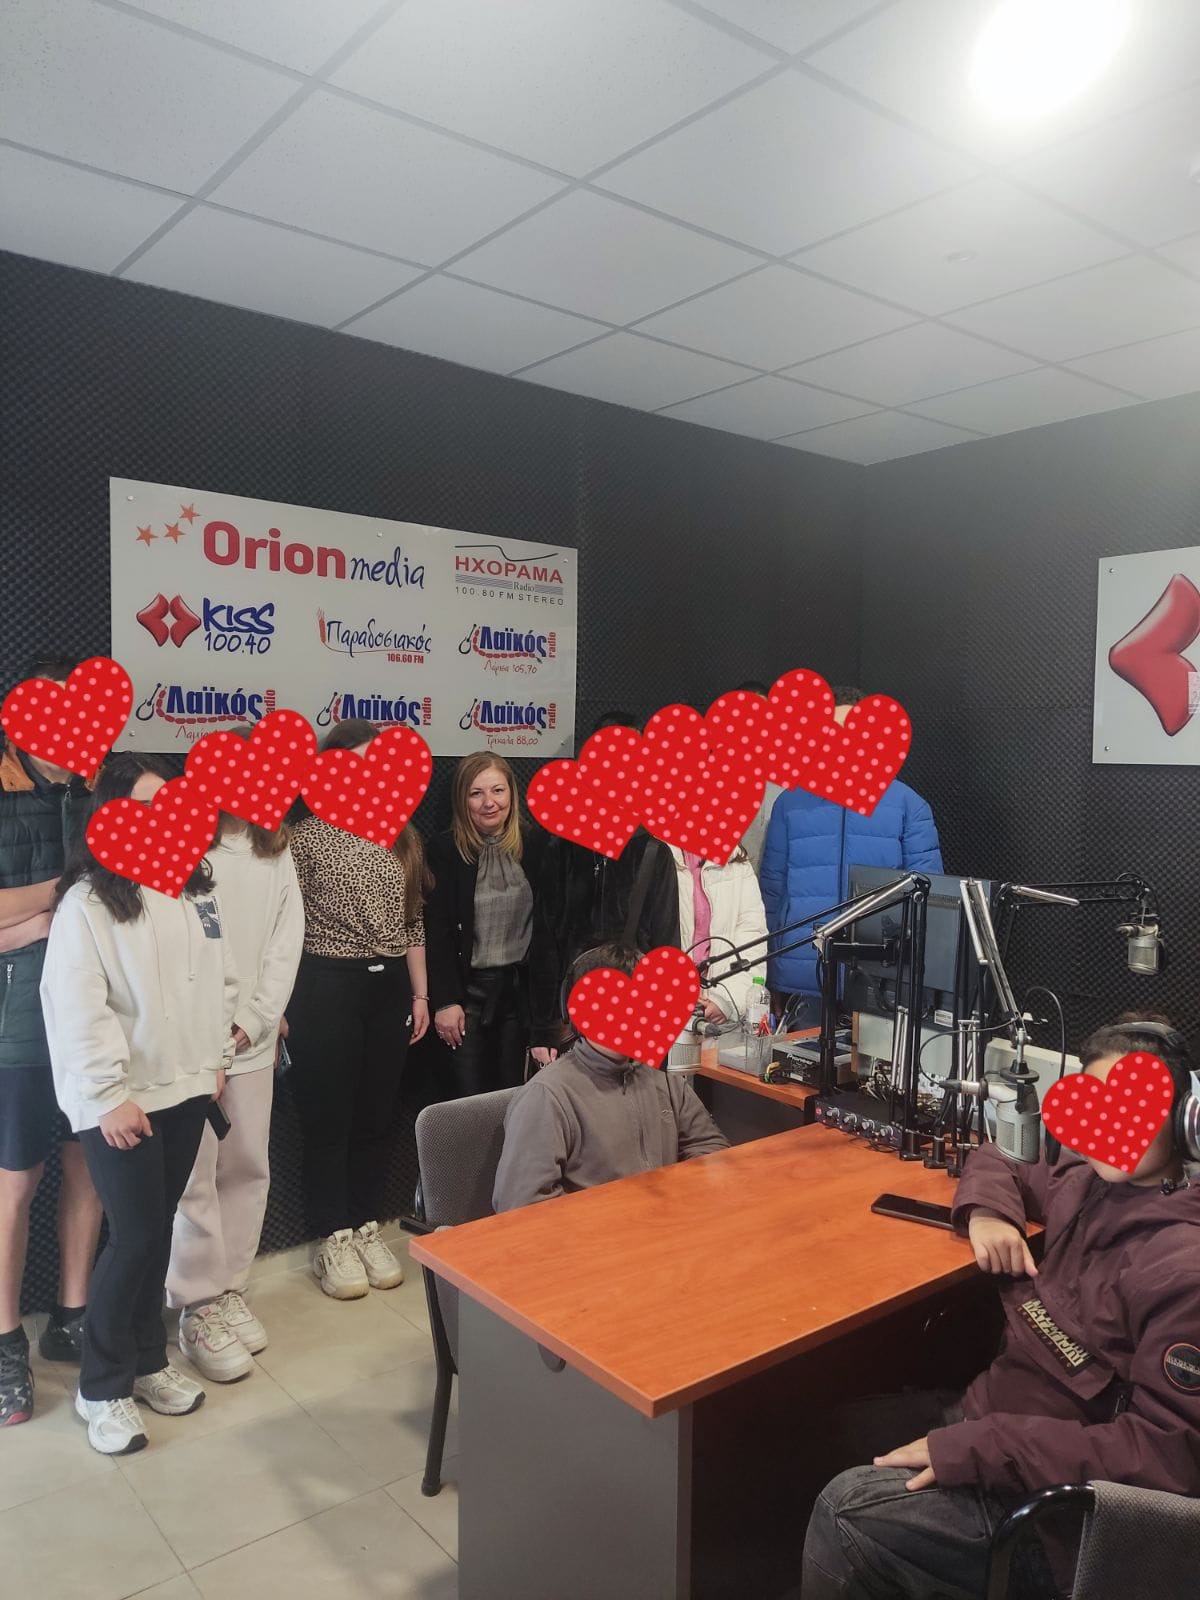 Εκπαιδευτική επίσκεψη του Ομίλου Ραδιοφωνίας του σχολείου στα studio των ραδιοφωνικών σταθμών ΗΧΟΡΑΜΑ και LAIKOS